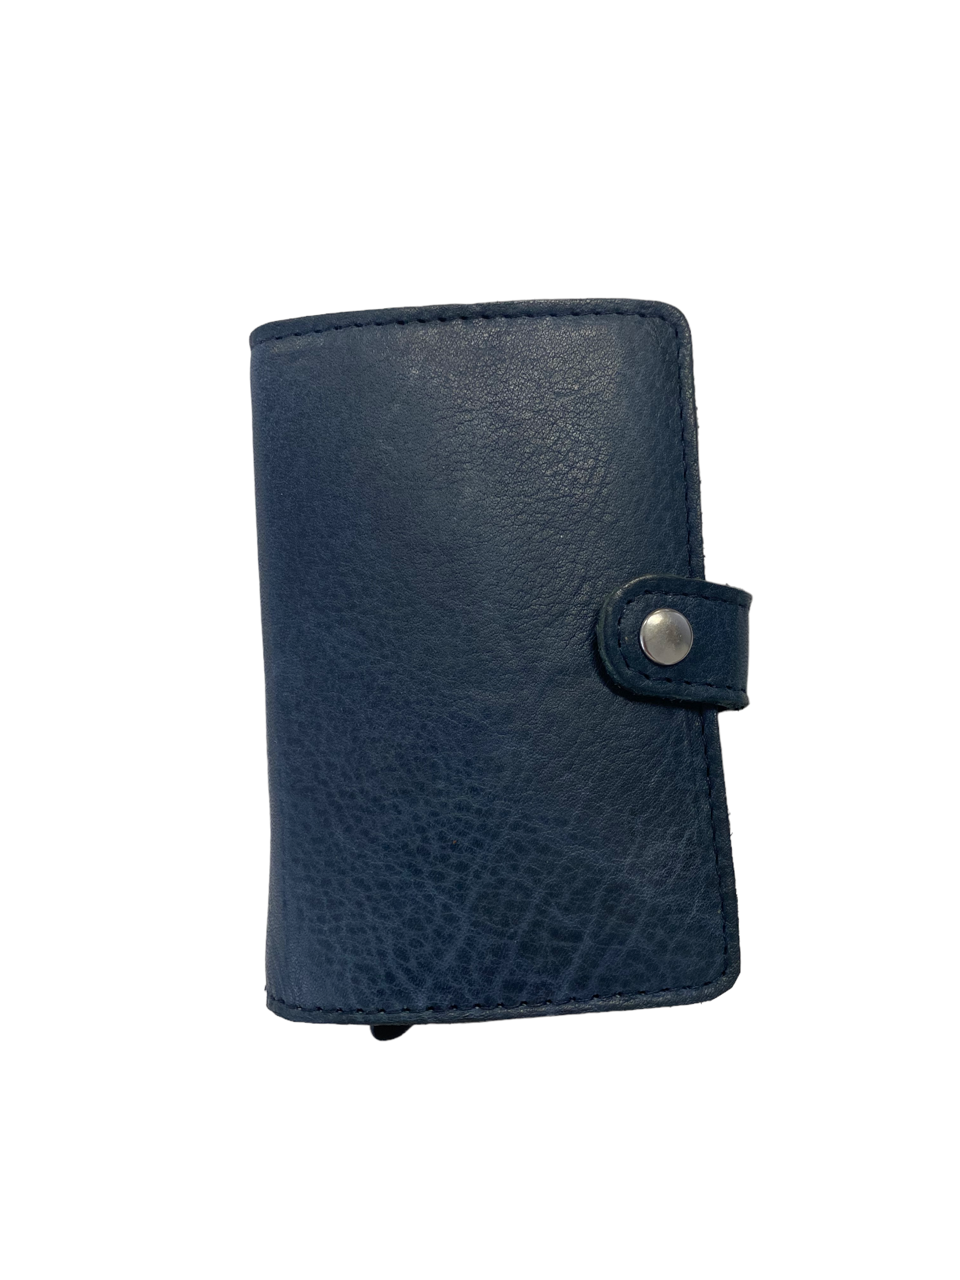 Oran - DL-02 Leather Spring load 8 card wallet - Blue-1